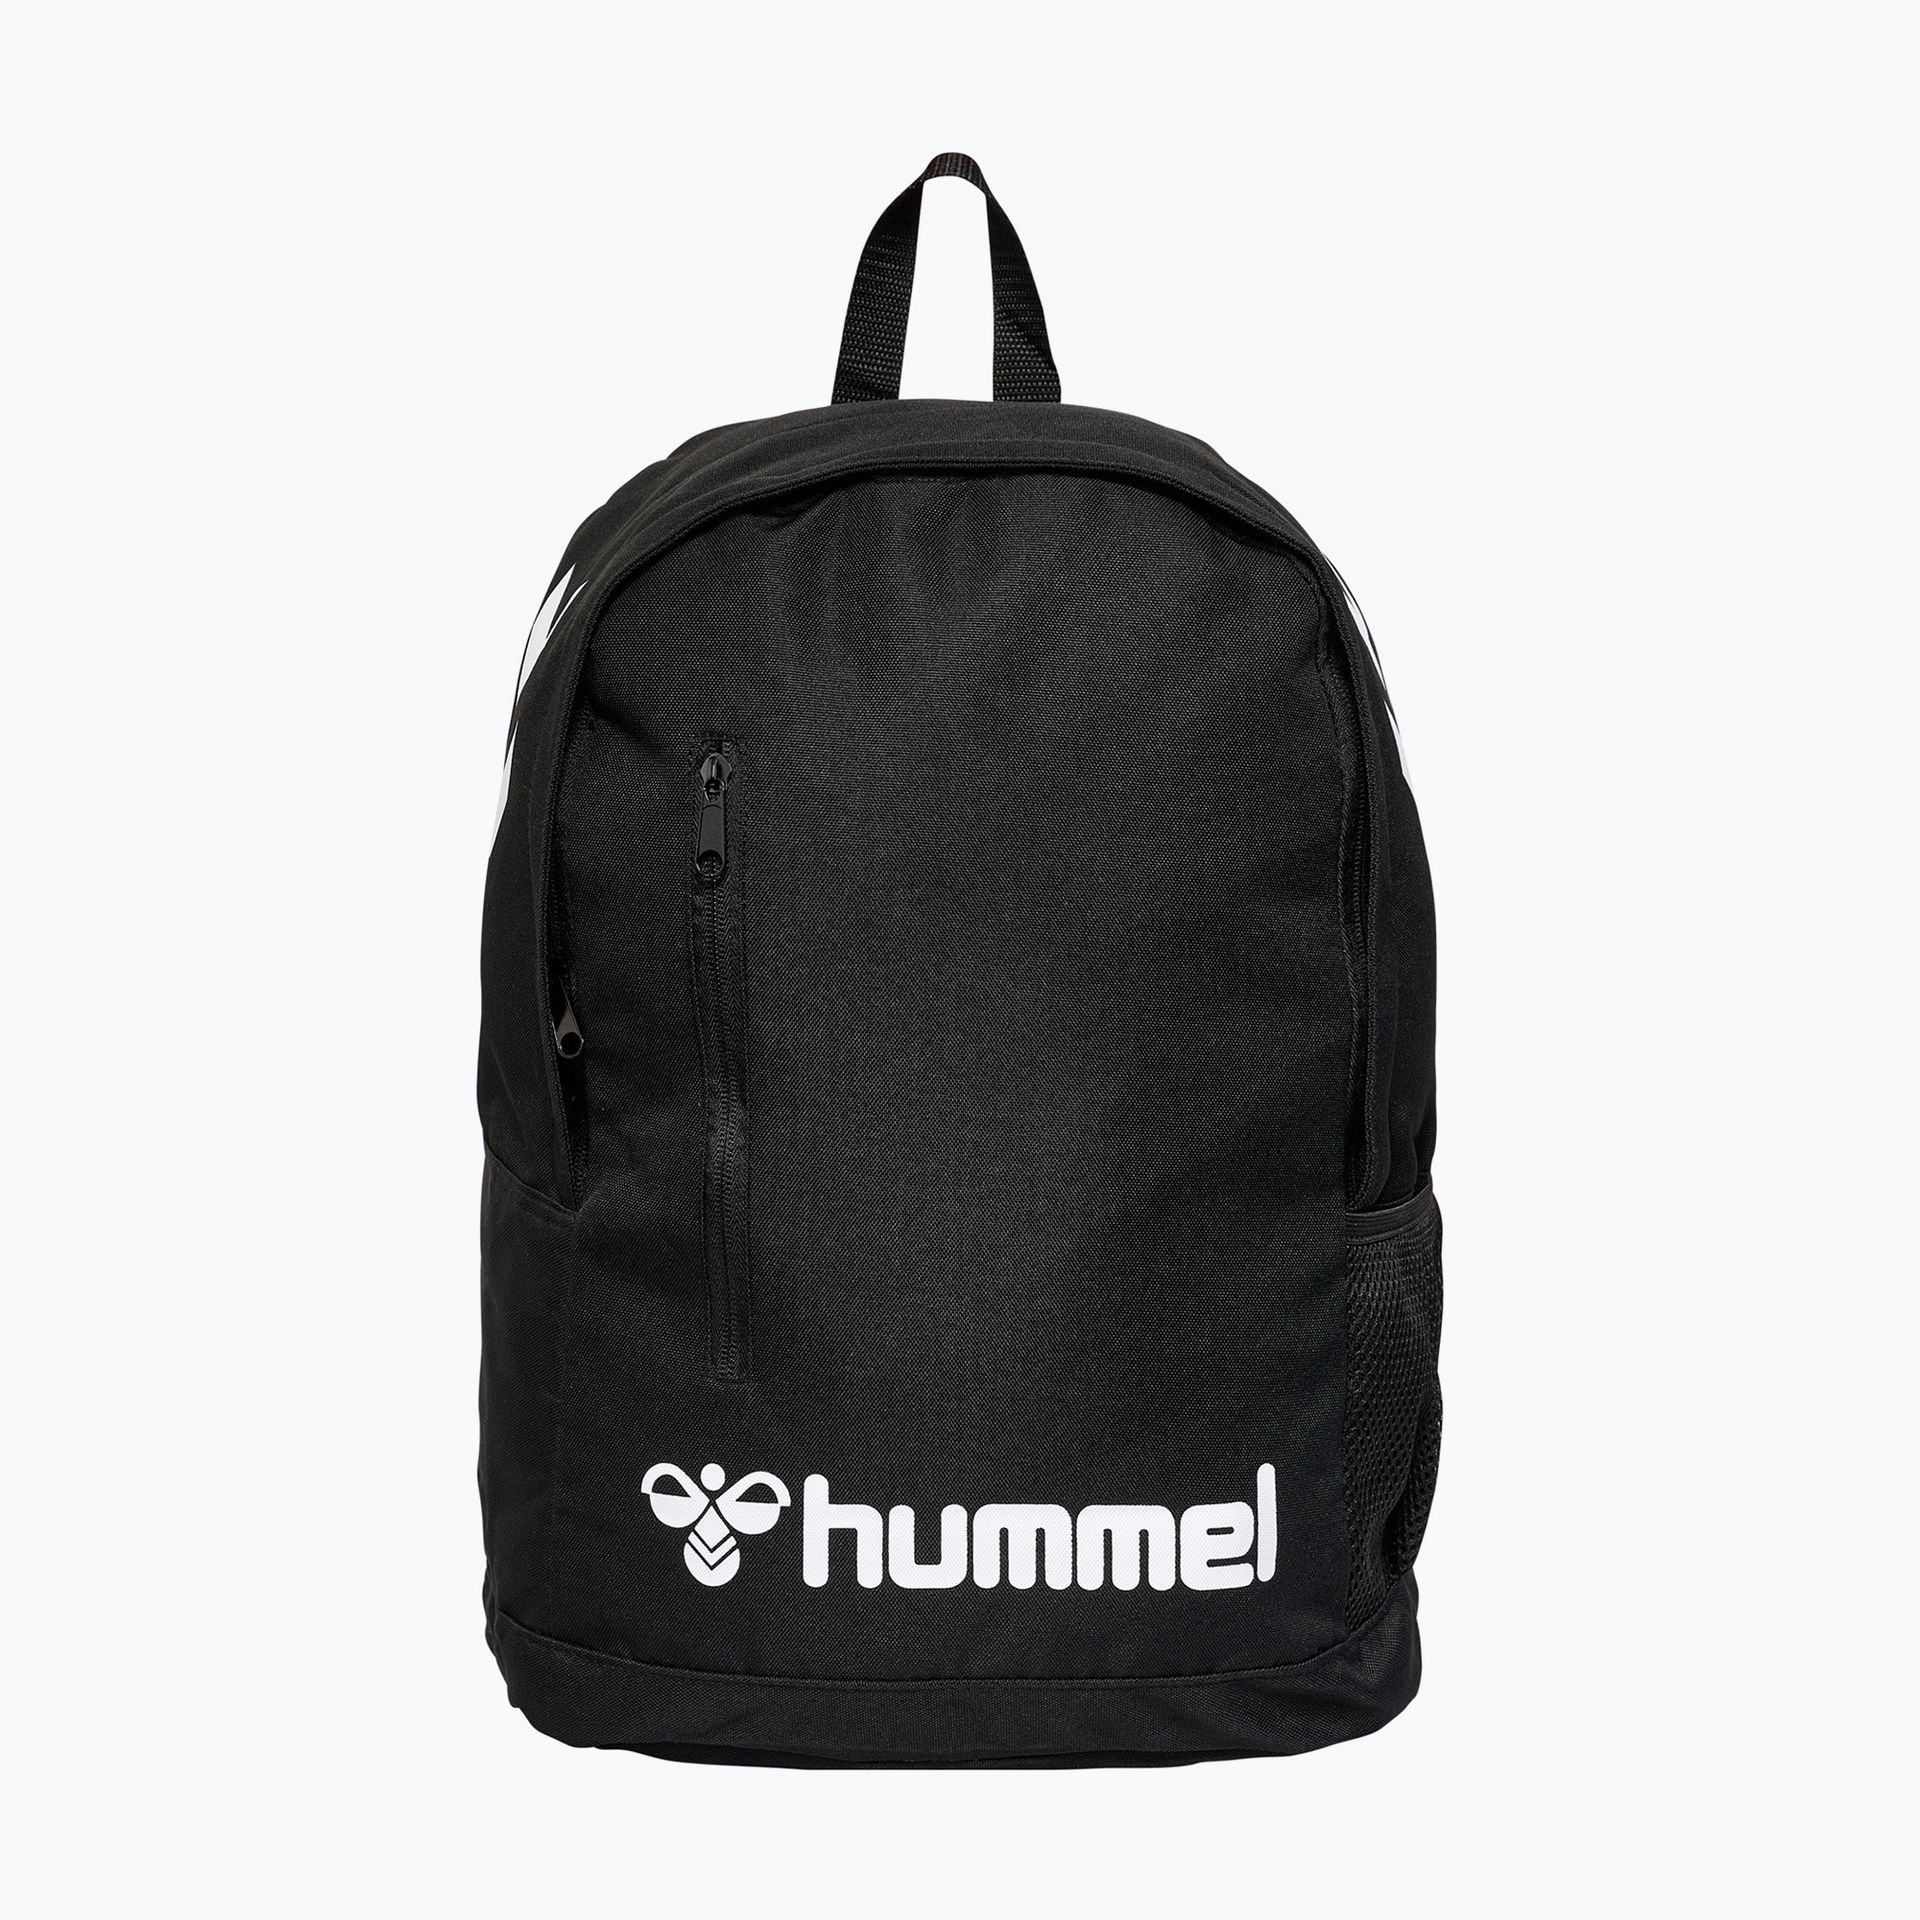 Plecak Hummel Core 28 l black | WYSYŁKA W 24H | 30 DNI NA ZWROT